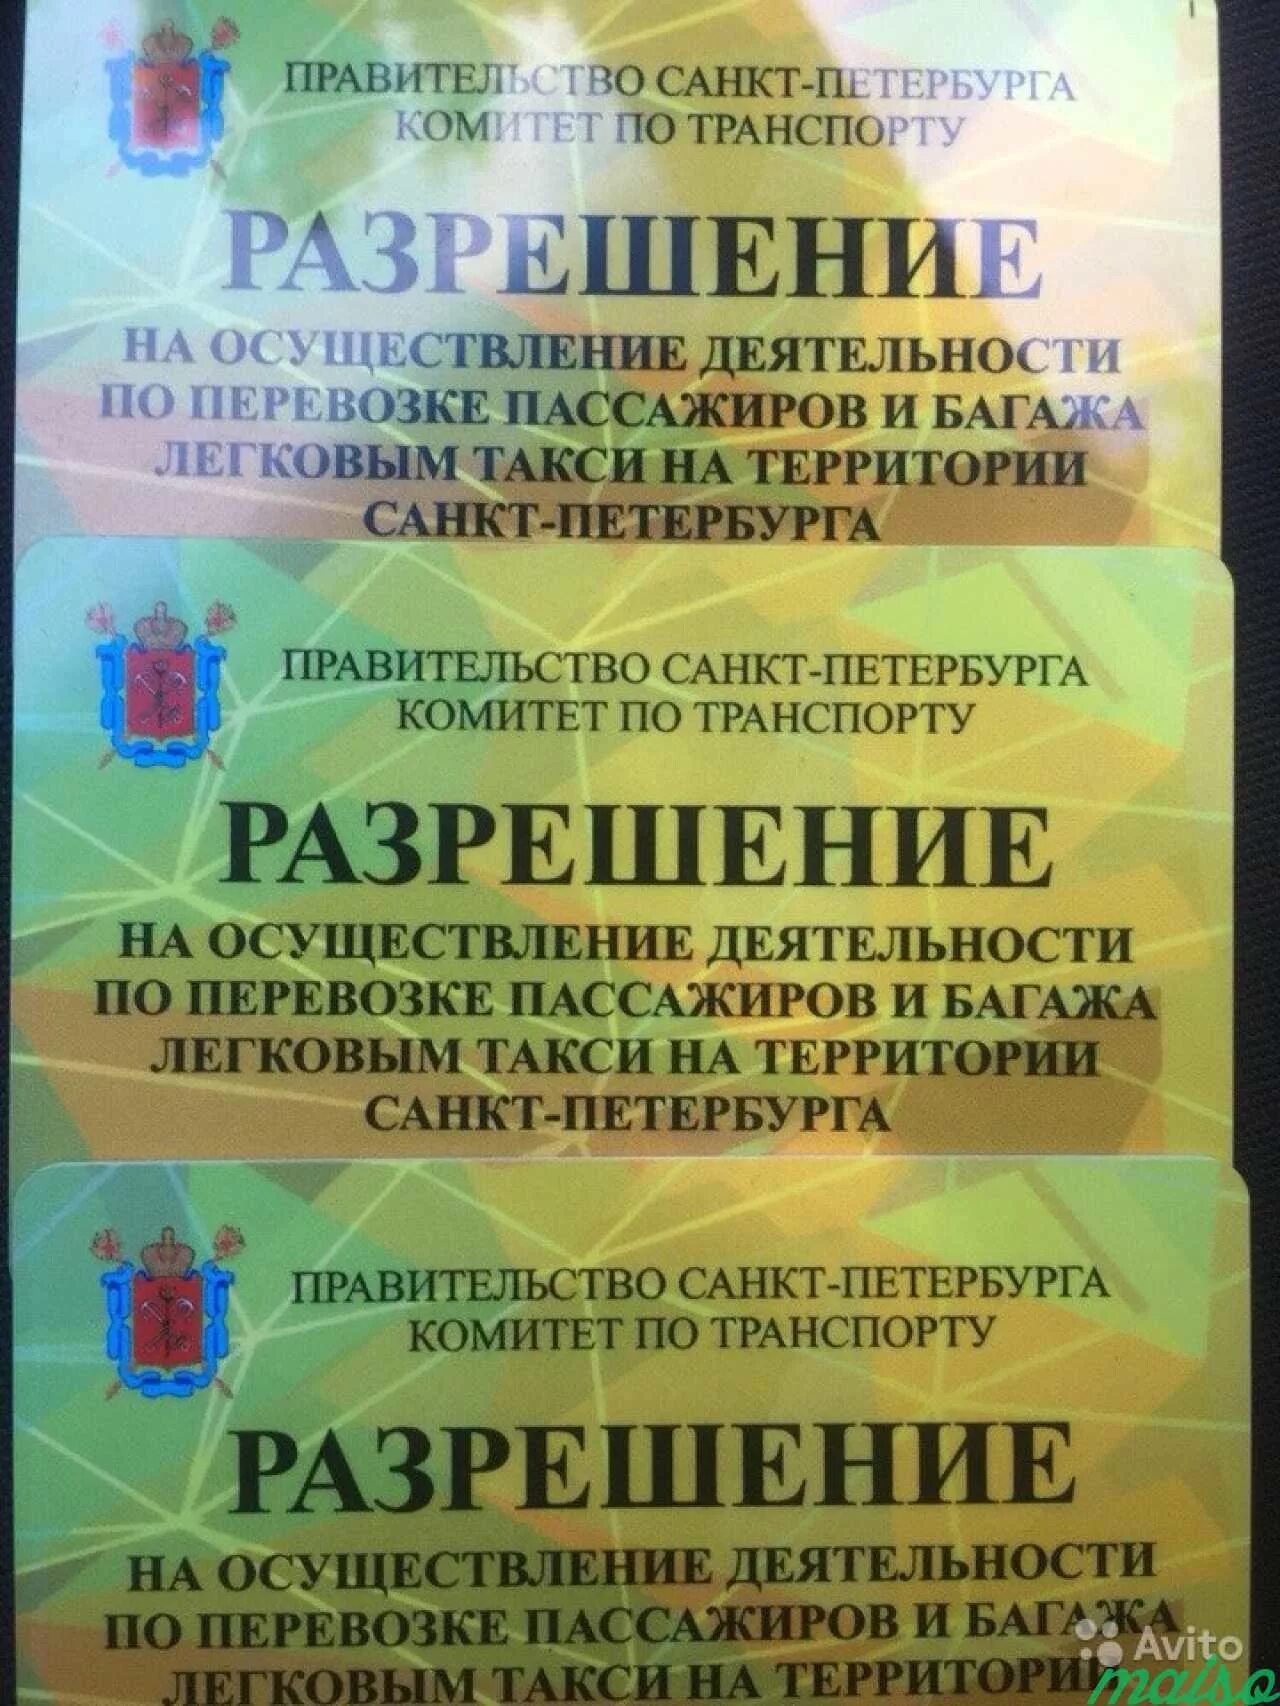 Проверить лицензию такси спб. Лицензия такси. Лицензия такси Санкт Петербург. Разрешение на осуществление деятельности такси. Разрешение на такси Санкт-Петербург.